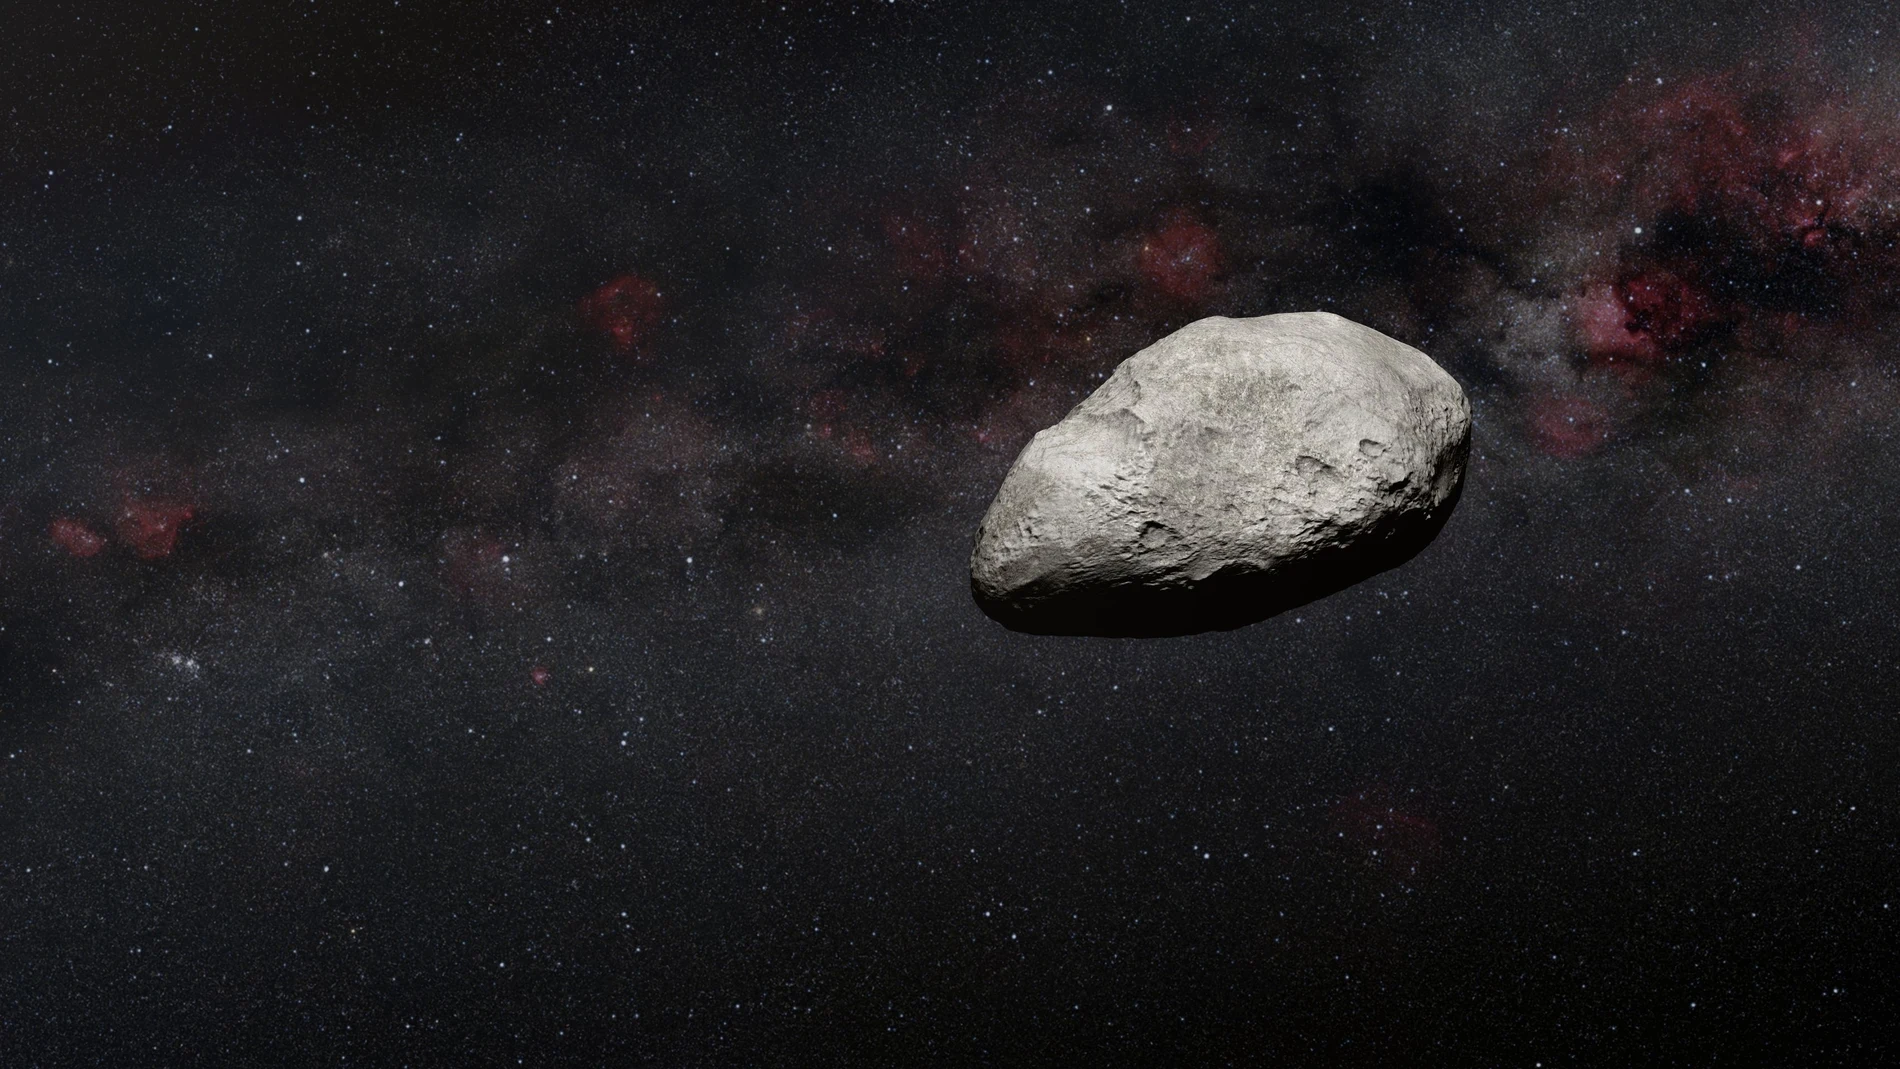 Un equipo internacional de astrónomos con investigadores de UA detectan un asteroide extremadamente pequeño desconocido